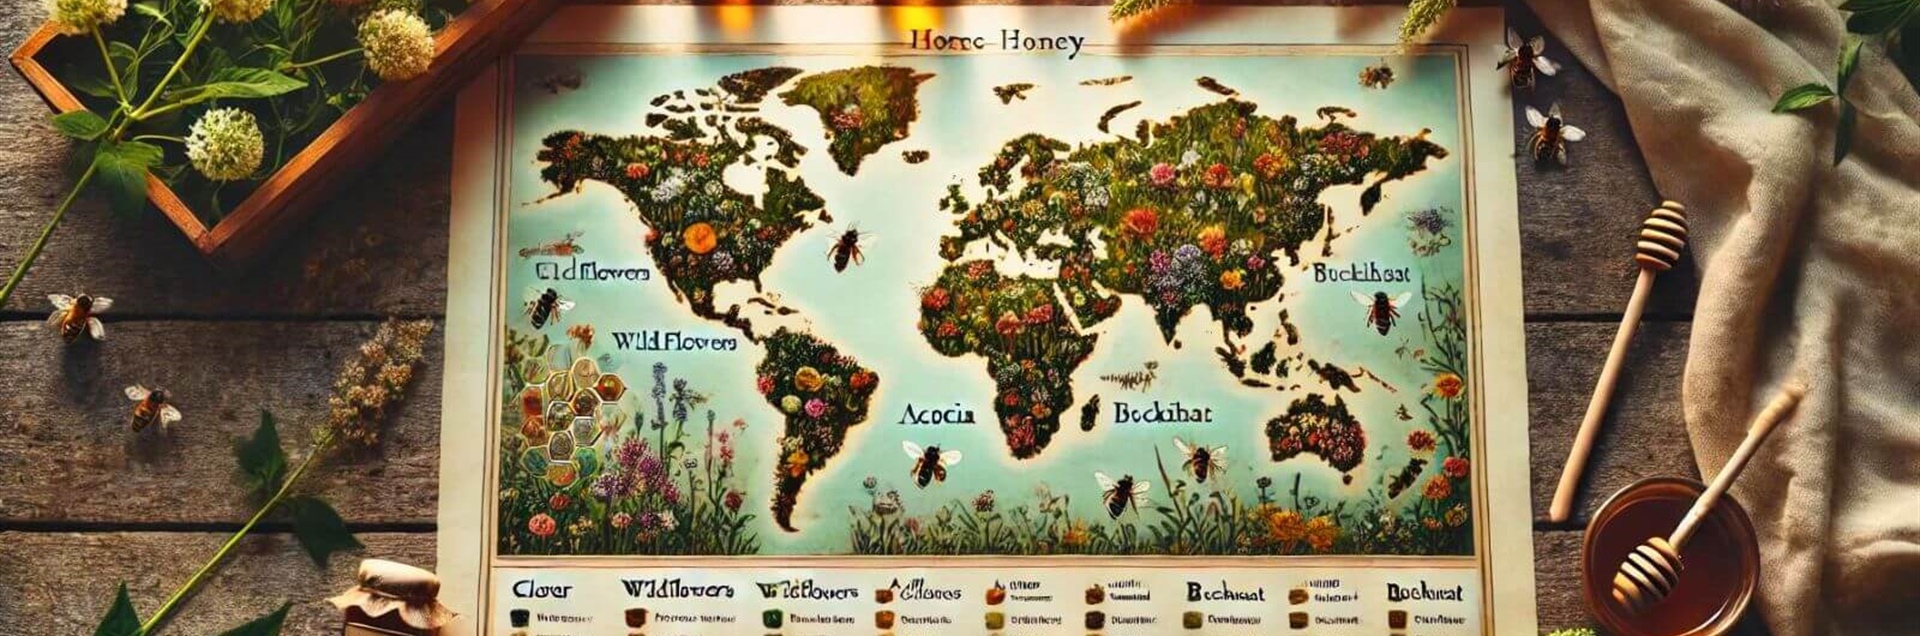 Miele e biodiversità: ecco perché ne esistono così tante varietà